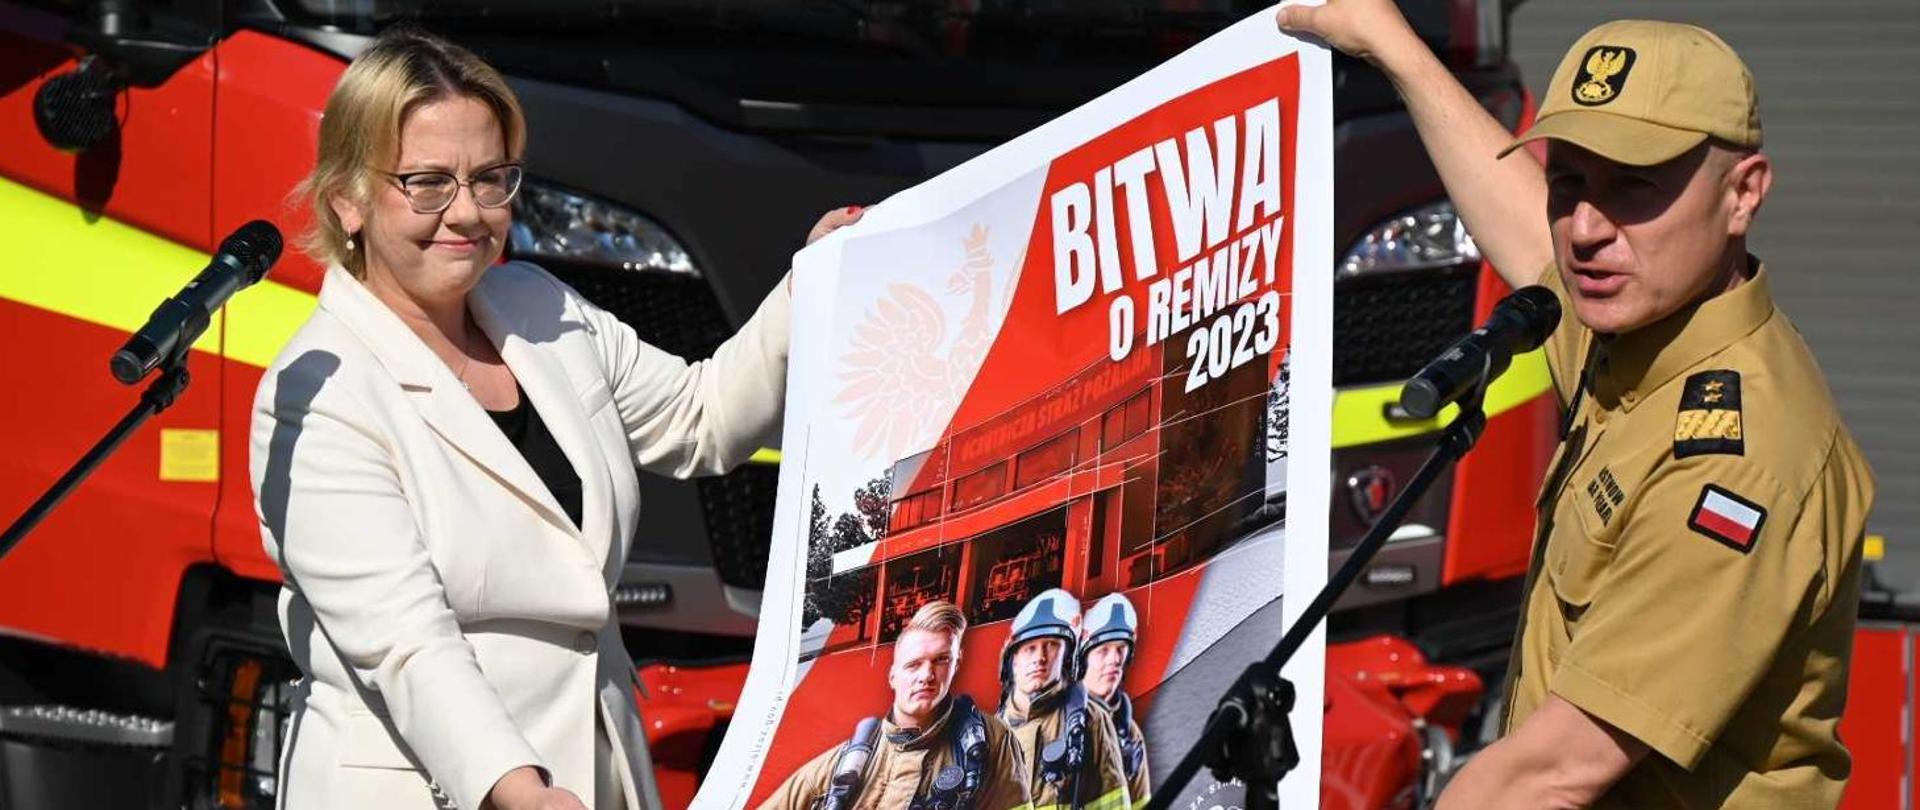 Kobieta w białej marynarce i umundurowany strażak prezentują plakat z napisem "Bitwa o remizy 2023"